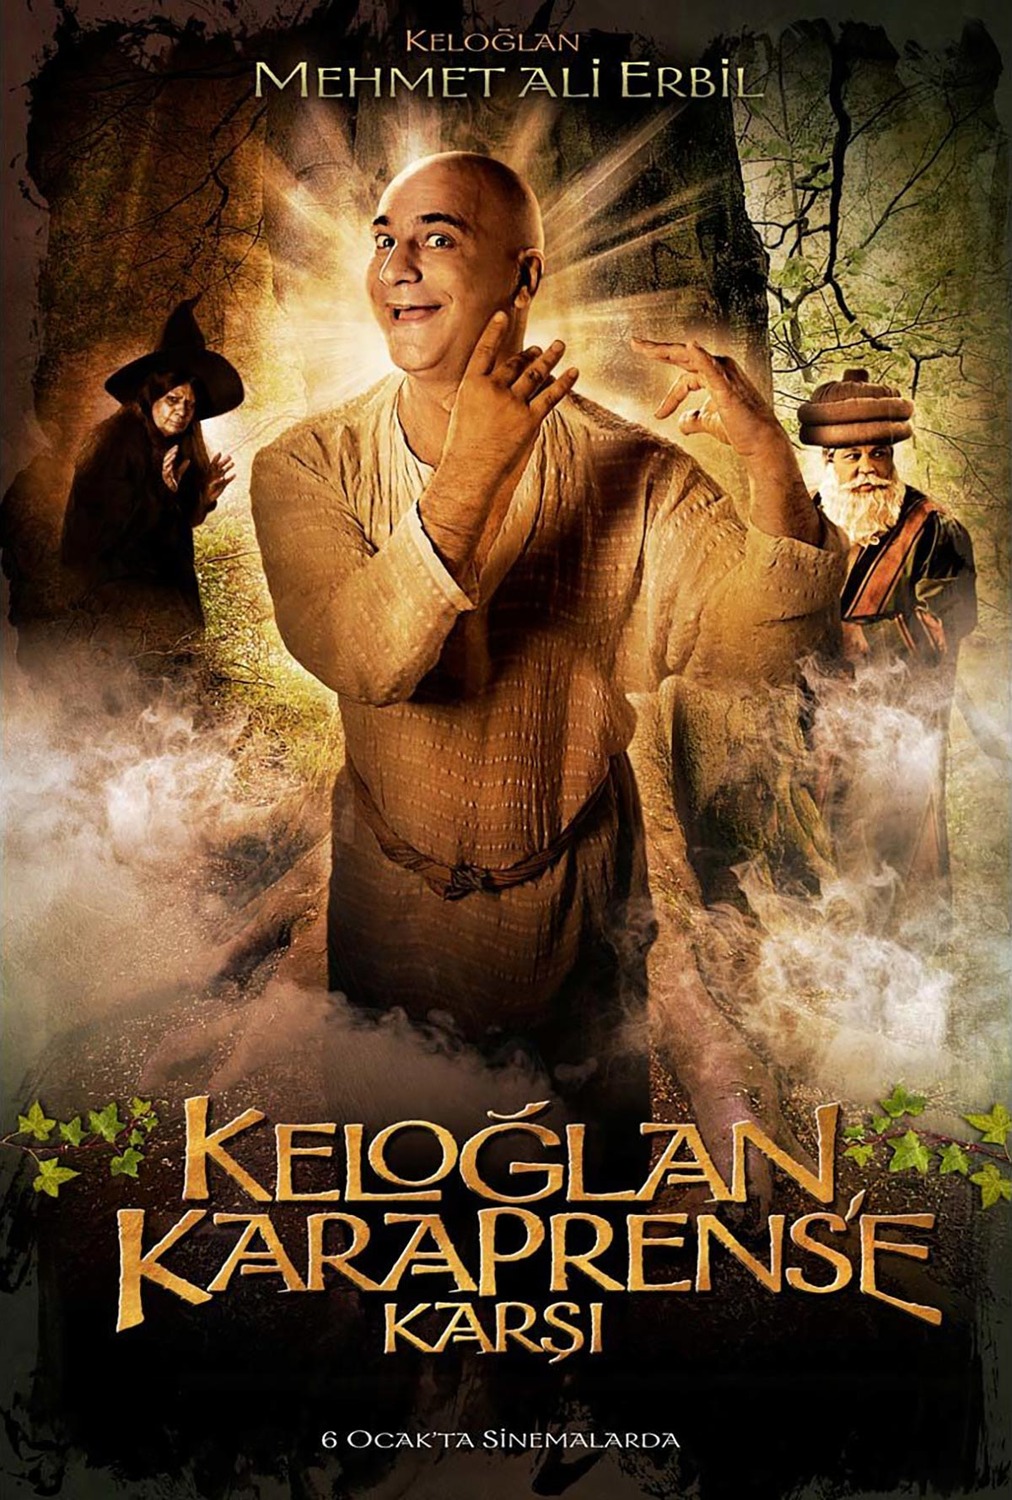 Extra Large Movie Poster Image for Keloglan Karaprens'e Karsi (#3 of 8)